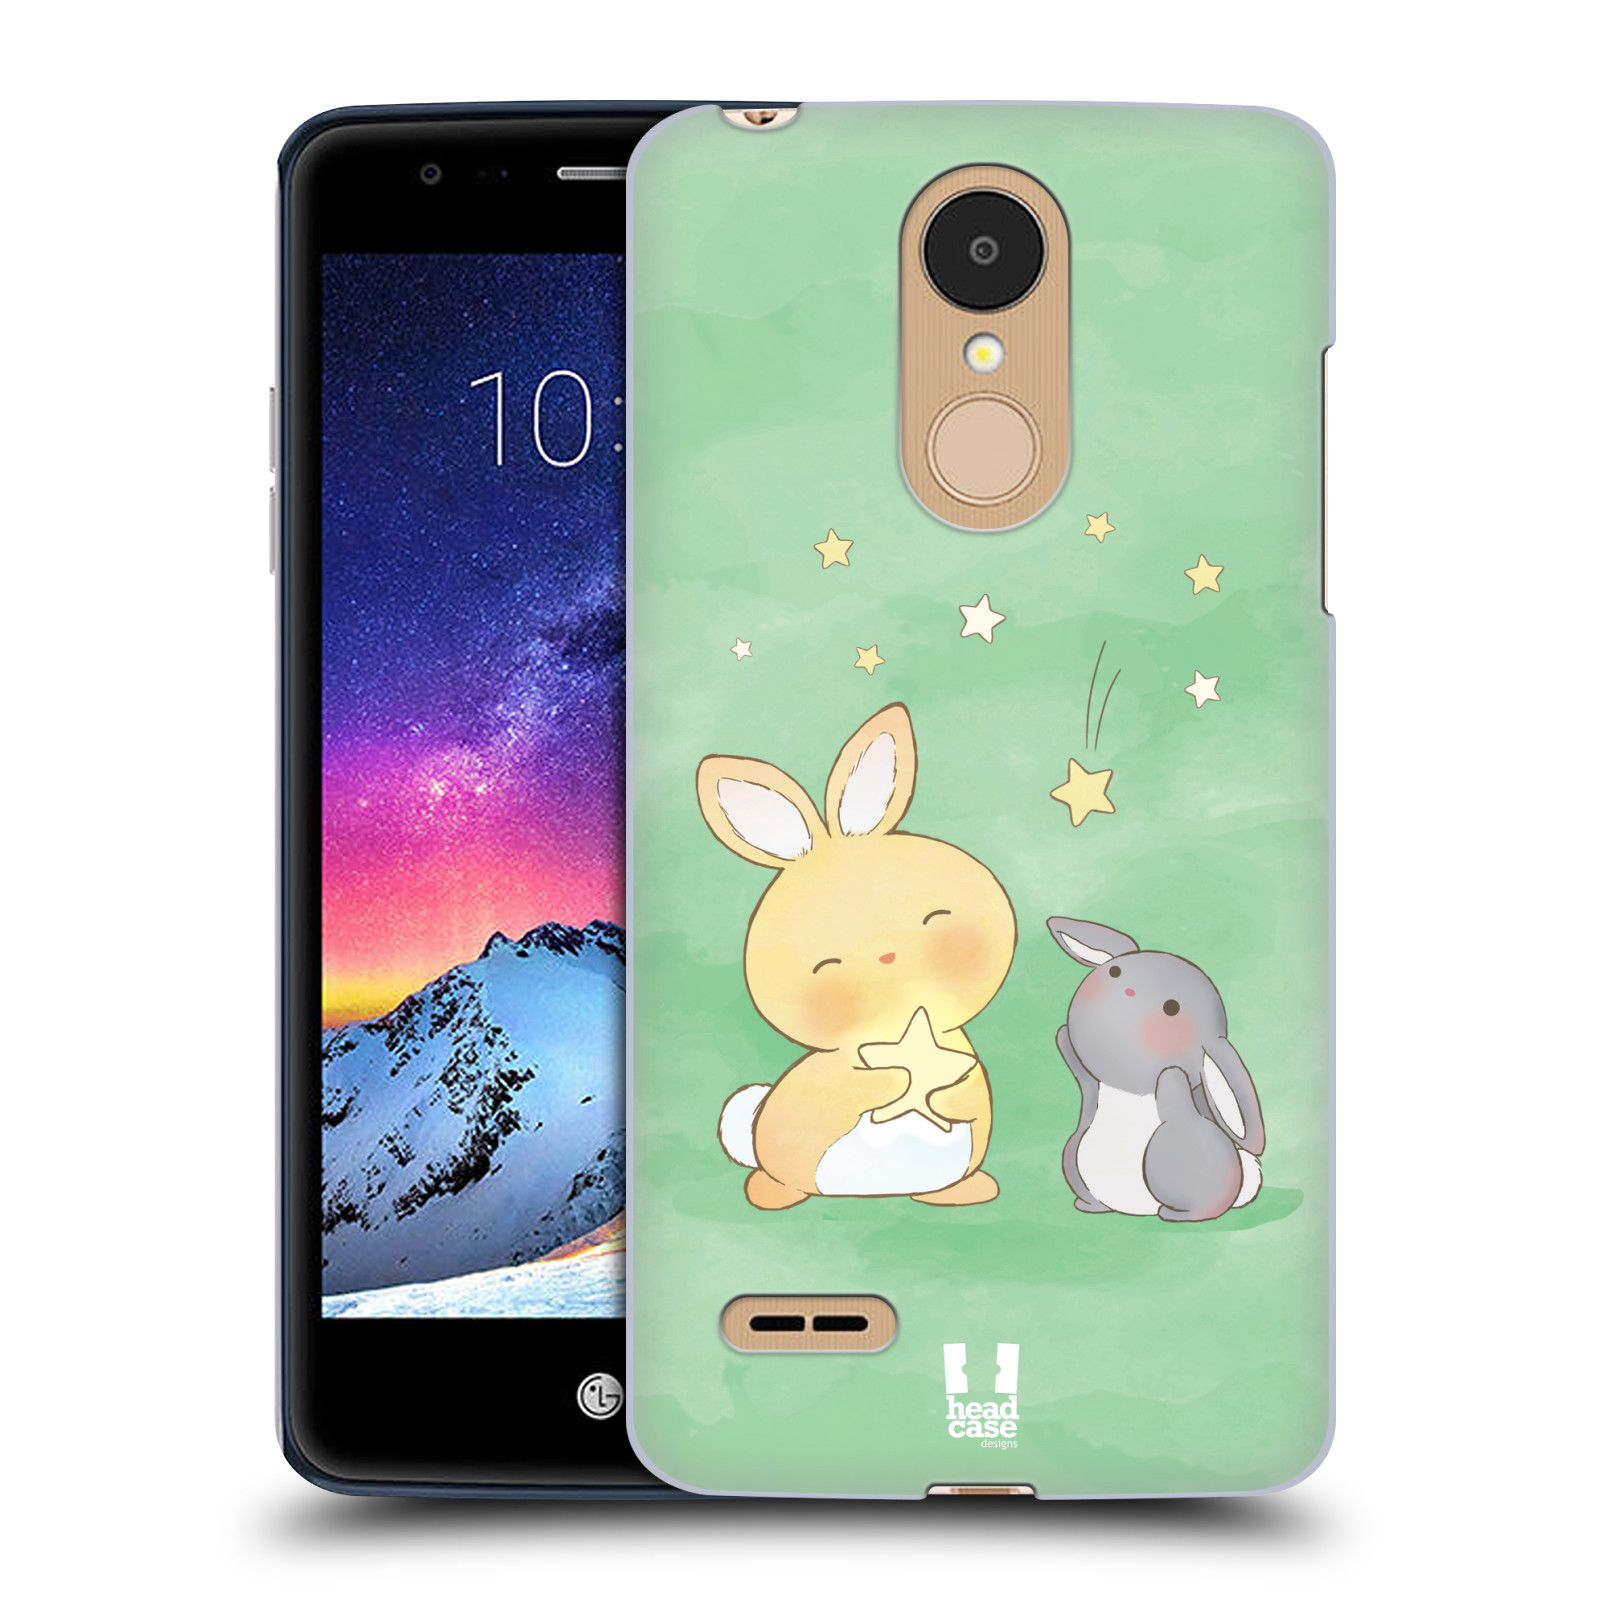 HEAD CASE plastový obal na mobil LG K9 / K8 2018 vzor králíček a hvězdy zelená